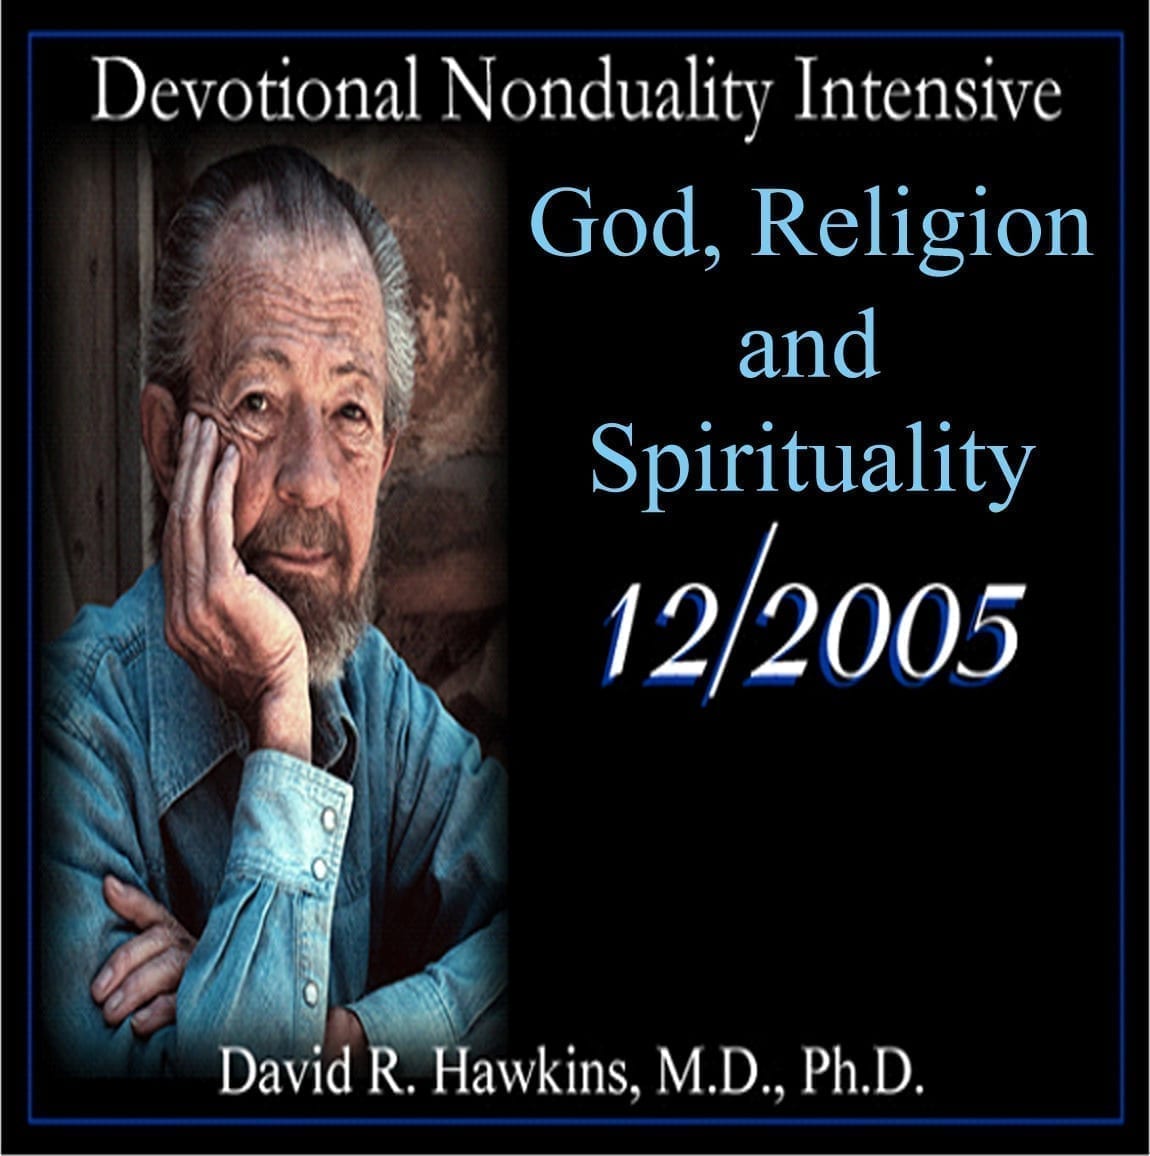 God, Religion, and Spirituality (Dec 2005)